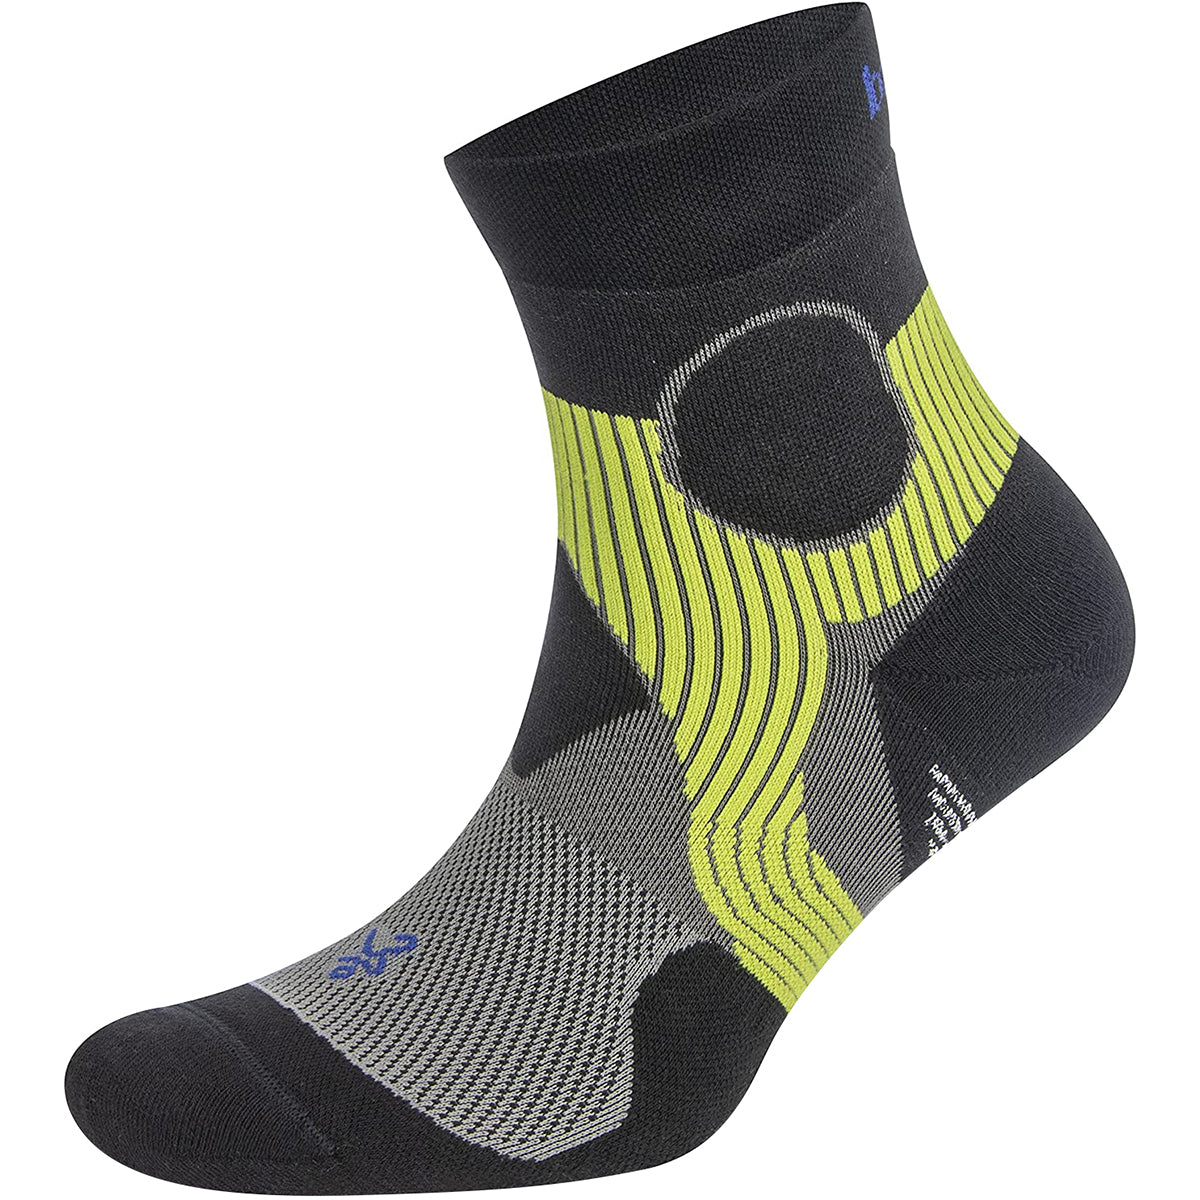 Balega Support Quarter Length Running Socks - Light Gray/Black Balega